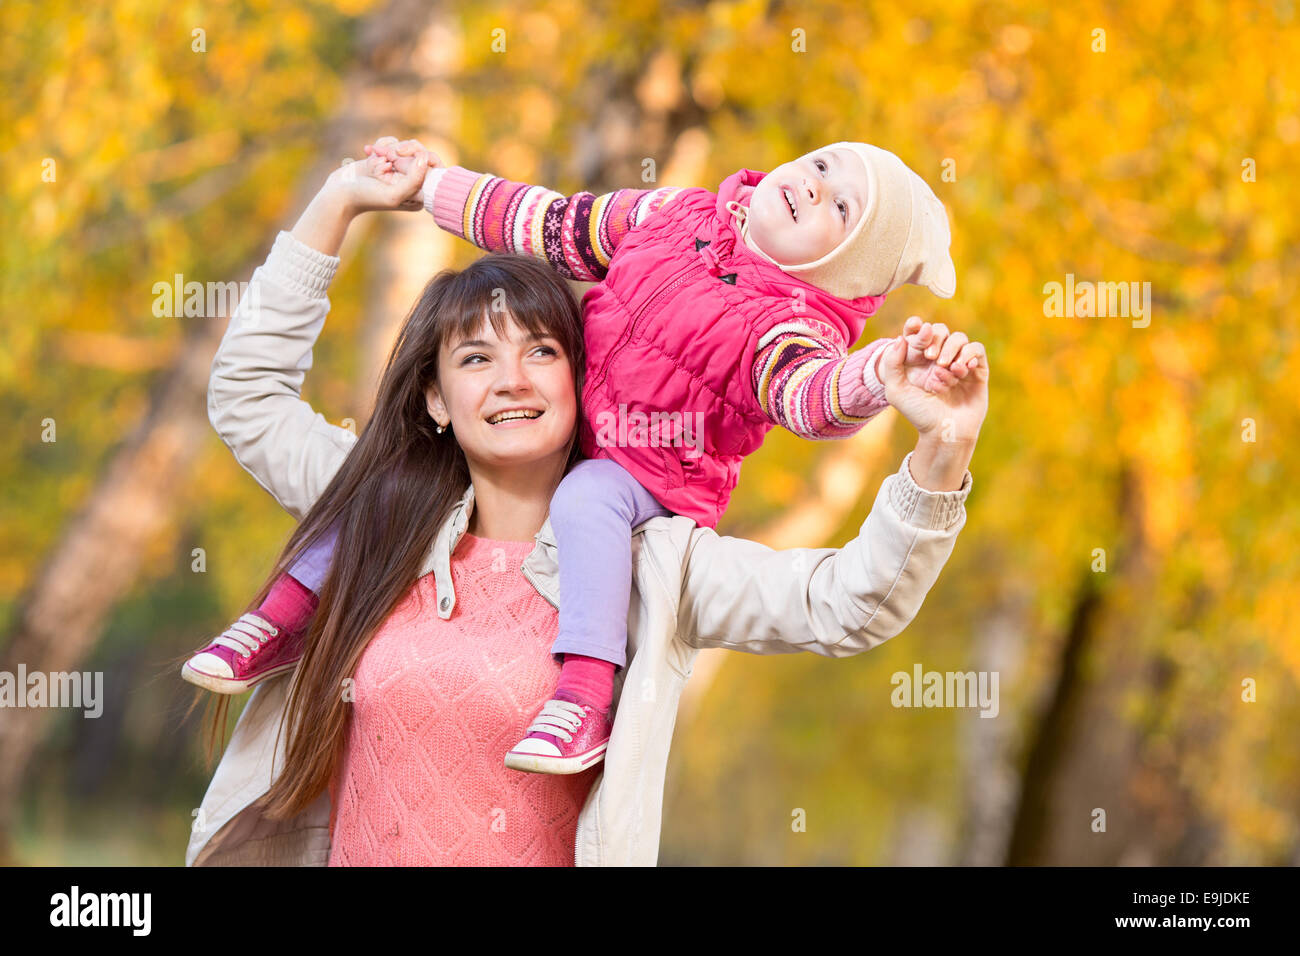 schöne Frau mit Kind Mädchen im Freien im herbstlichen park Stockfoto